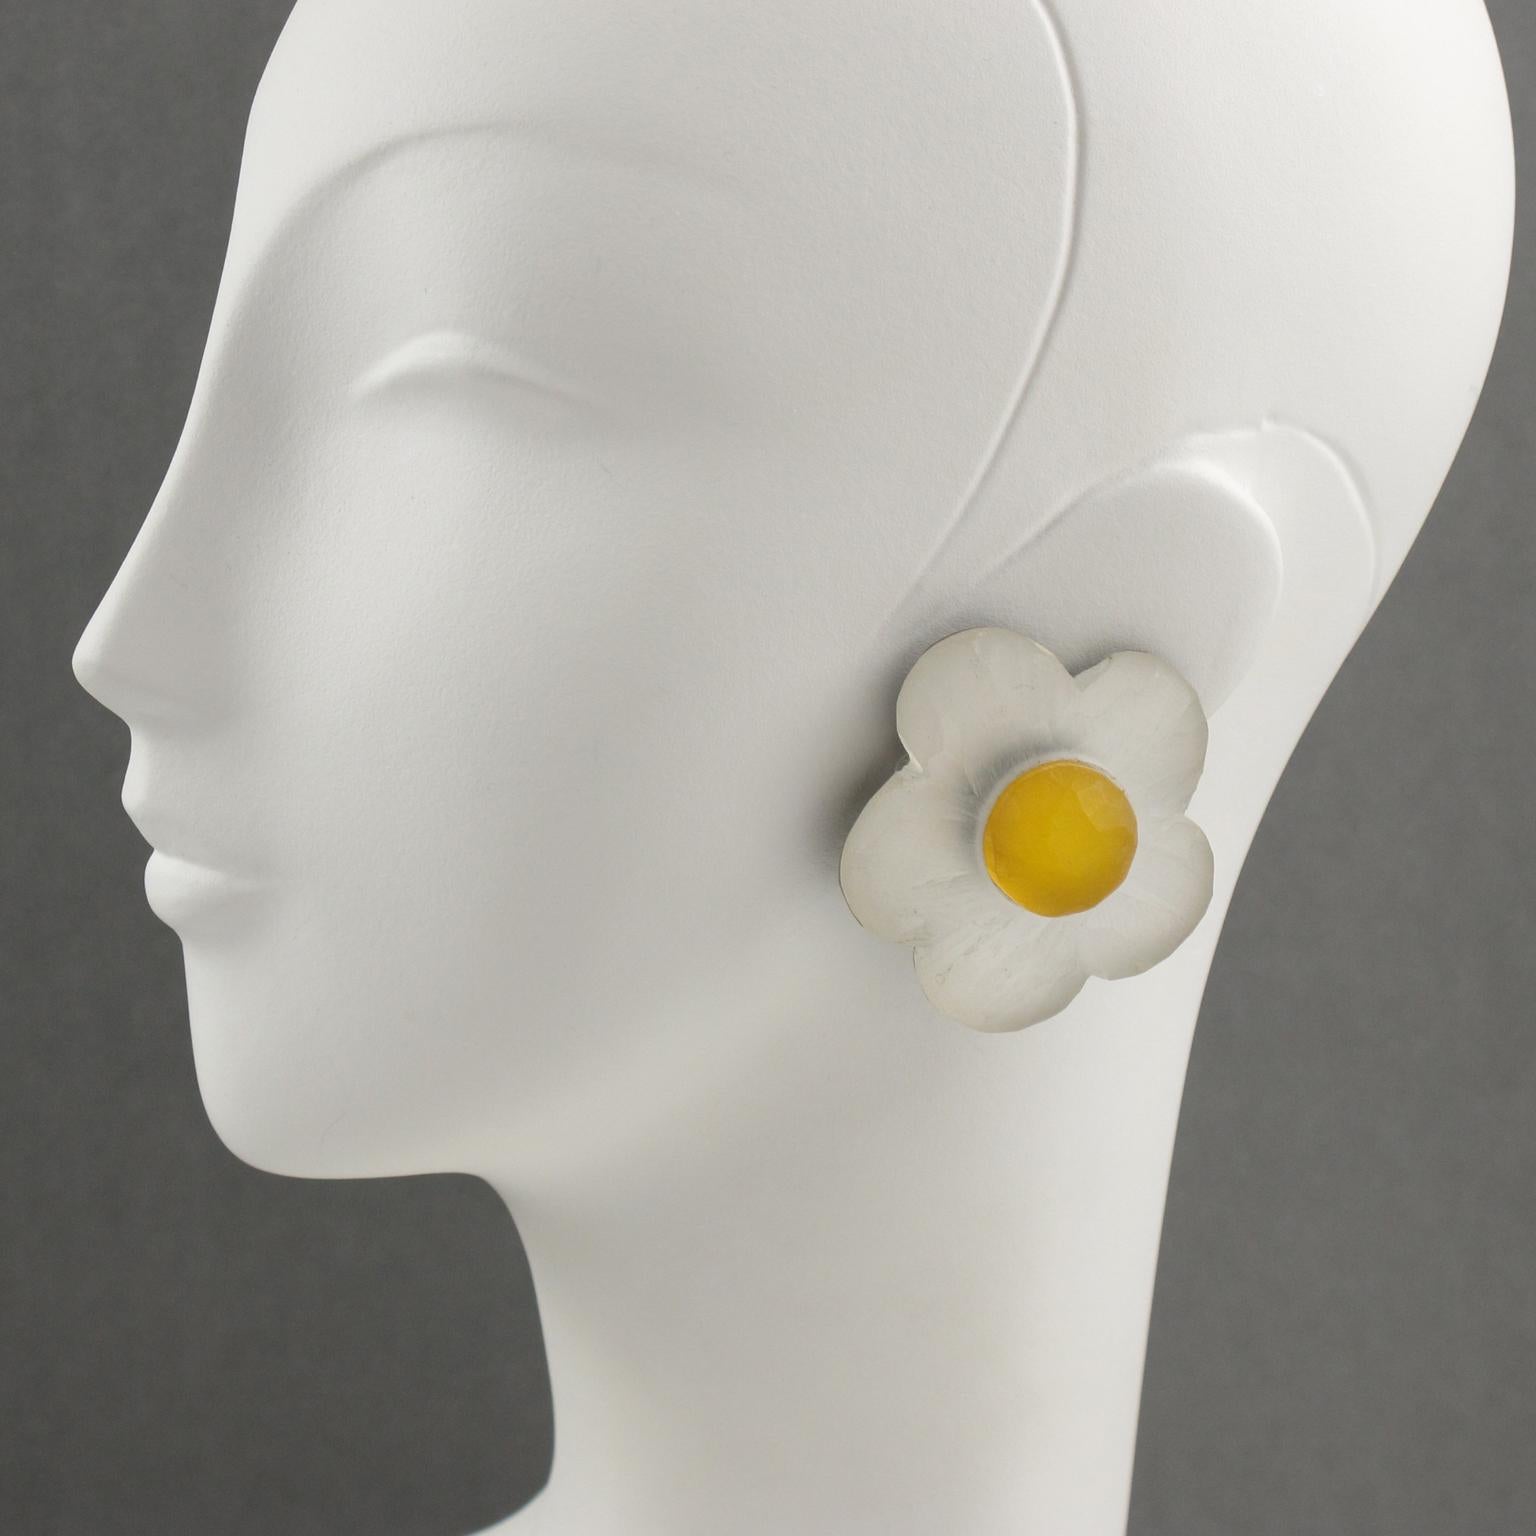 Wunderschöne übergroße Ohrringe aus gefrostetem Lucit, entworfen von Harriet Bauknight für Kaso. Dimensionale Form ganz geschnitzt und strukturiert mit einer Gänseblümchenblüte in gefrosteten weißen und gelben Farben. Signiert auf der Rückseite mit